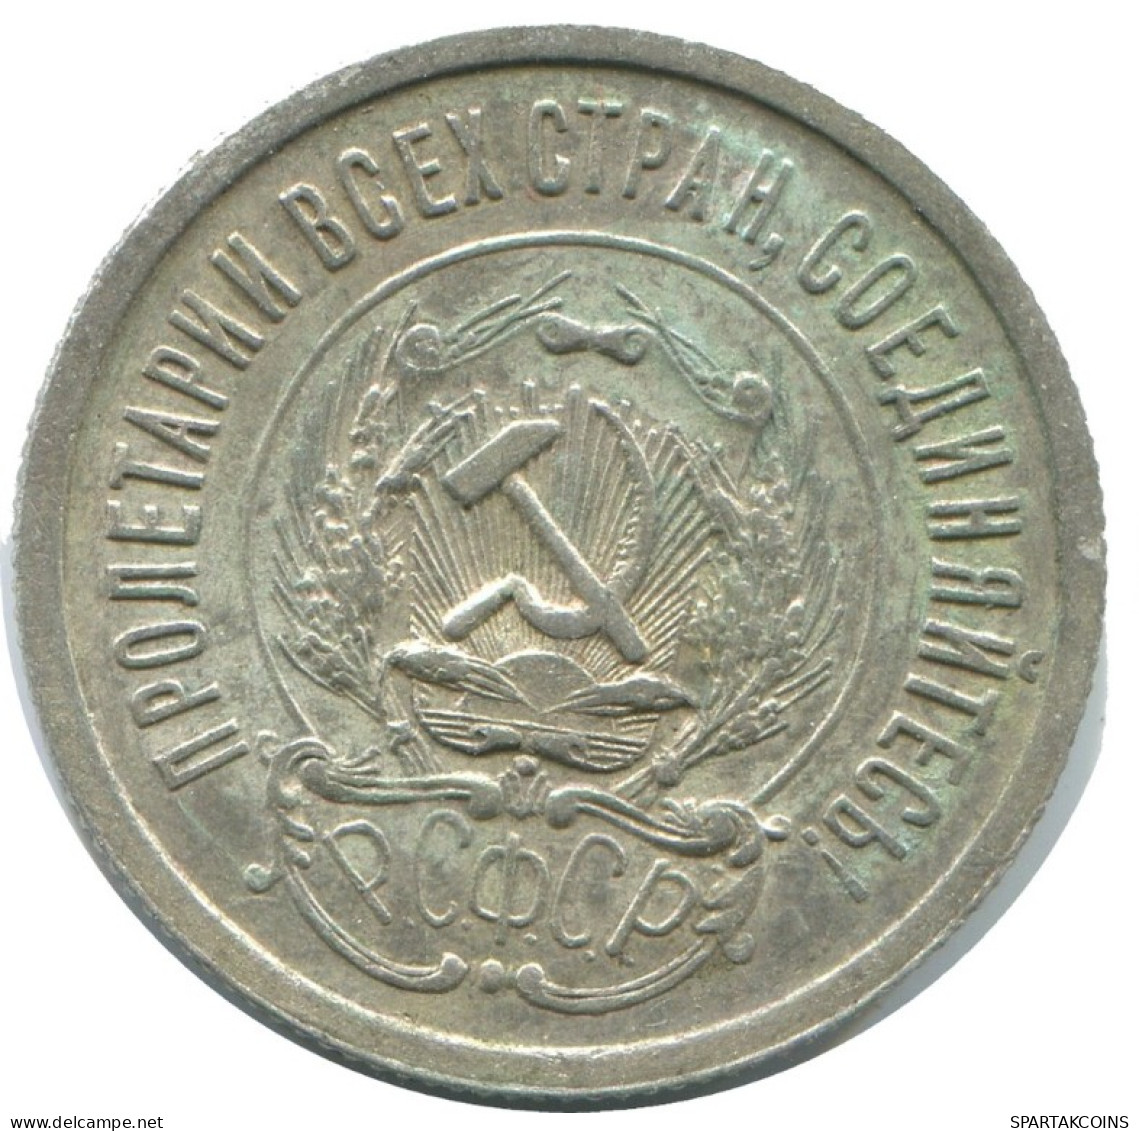 20 KOPEKS 1923 RUSSIA RSFSR SILVER Coin HIGH GRADE #AF690.U.A - Russland